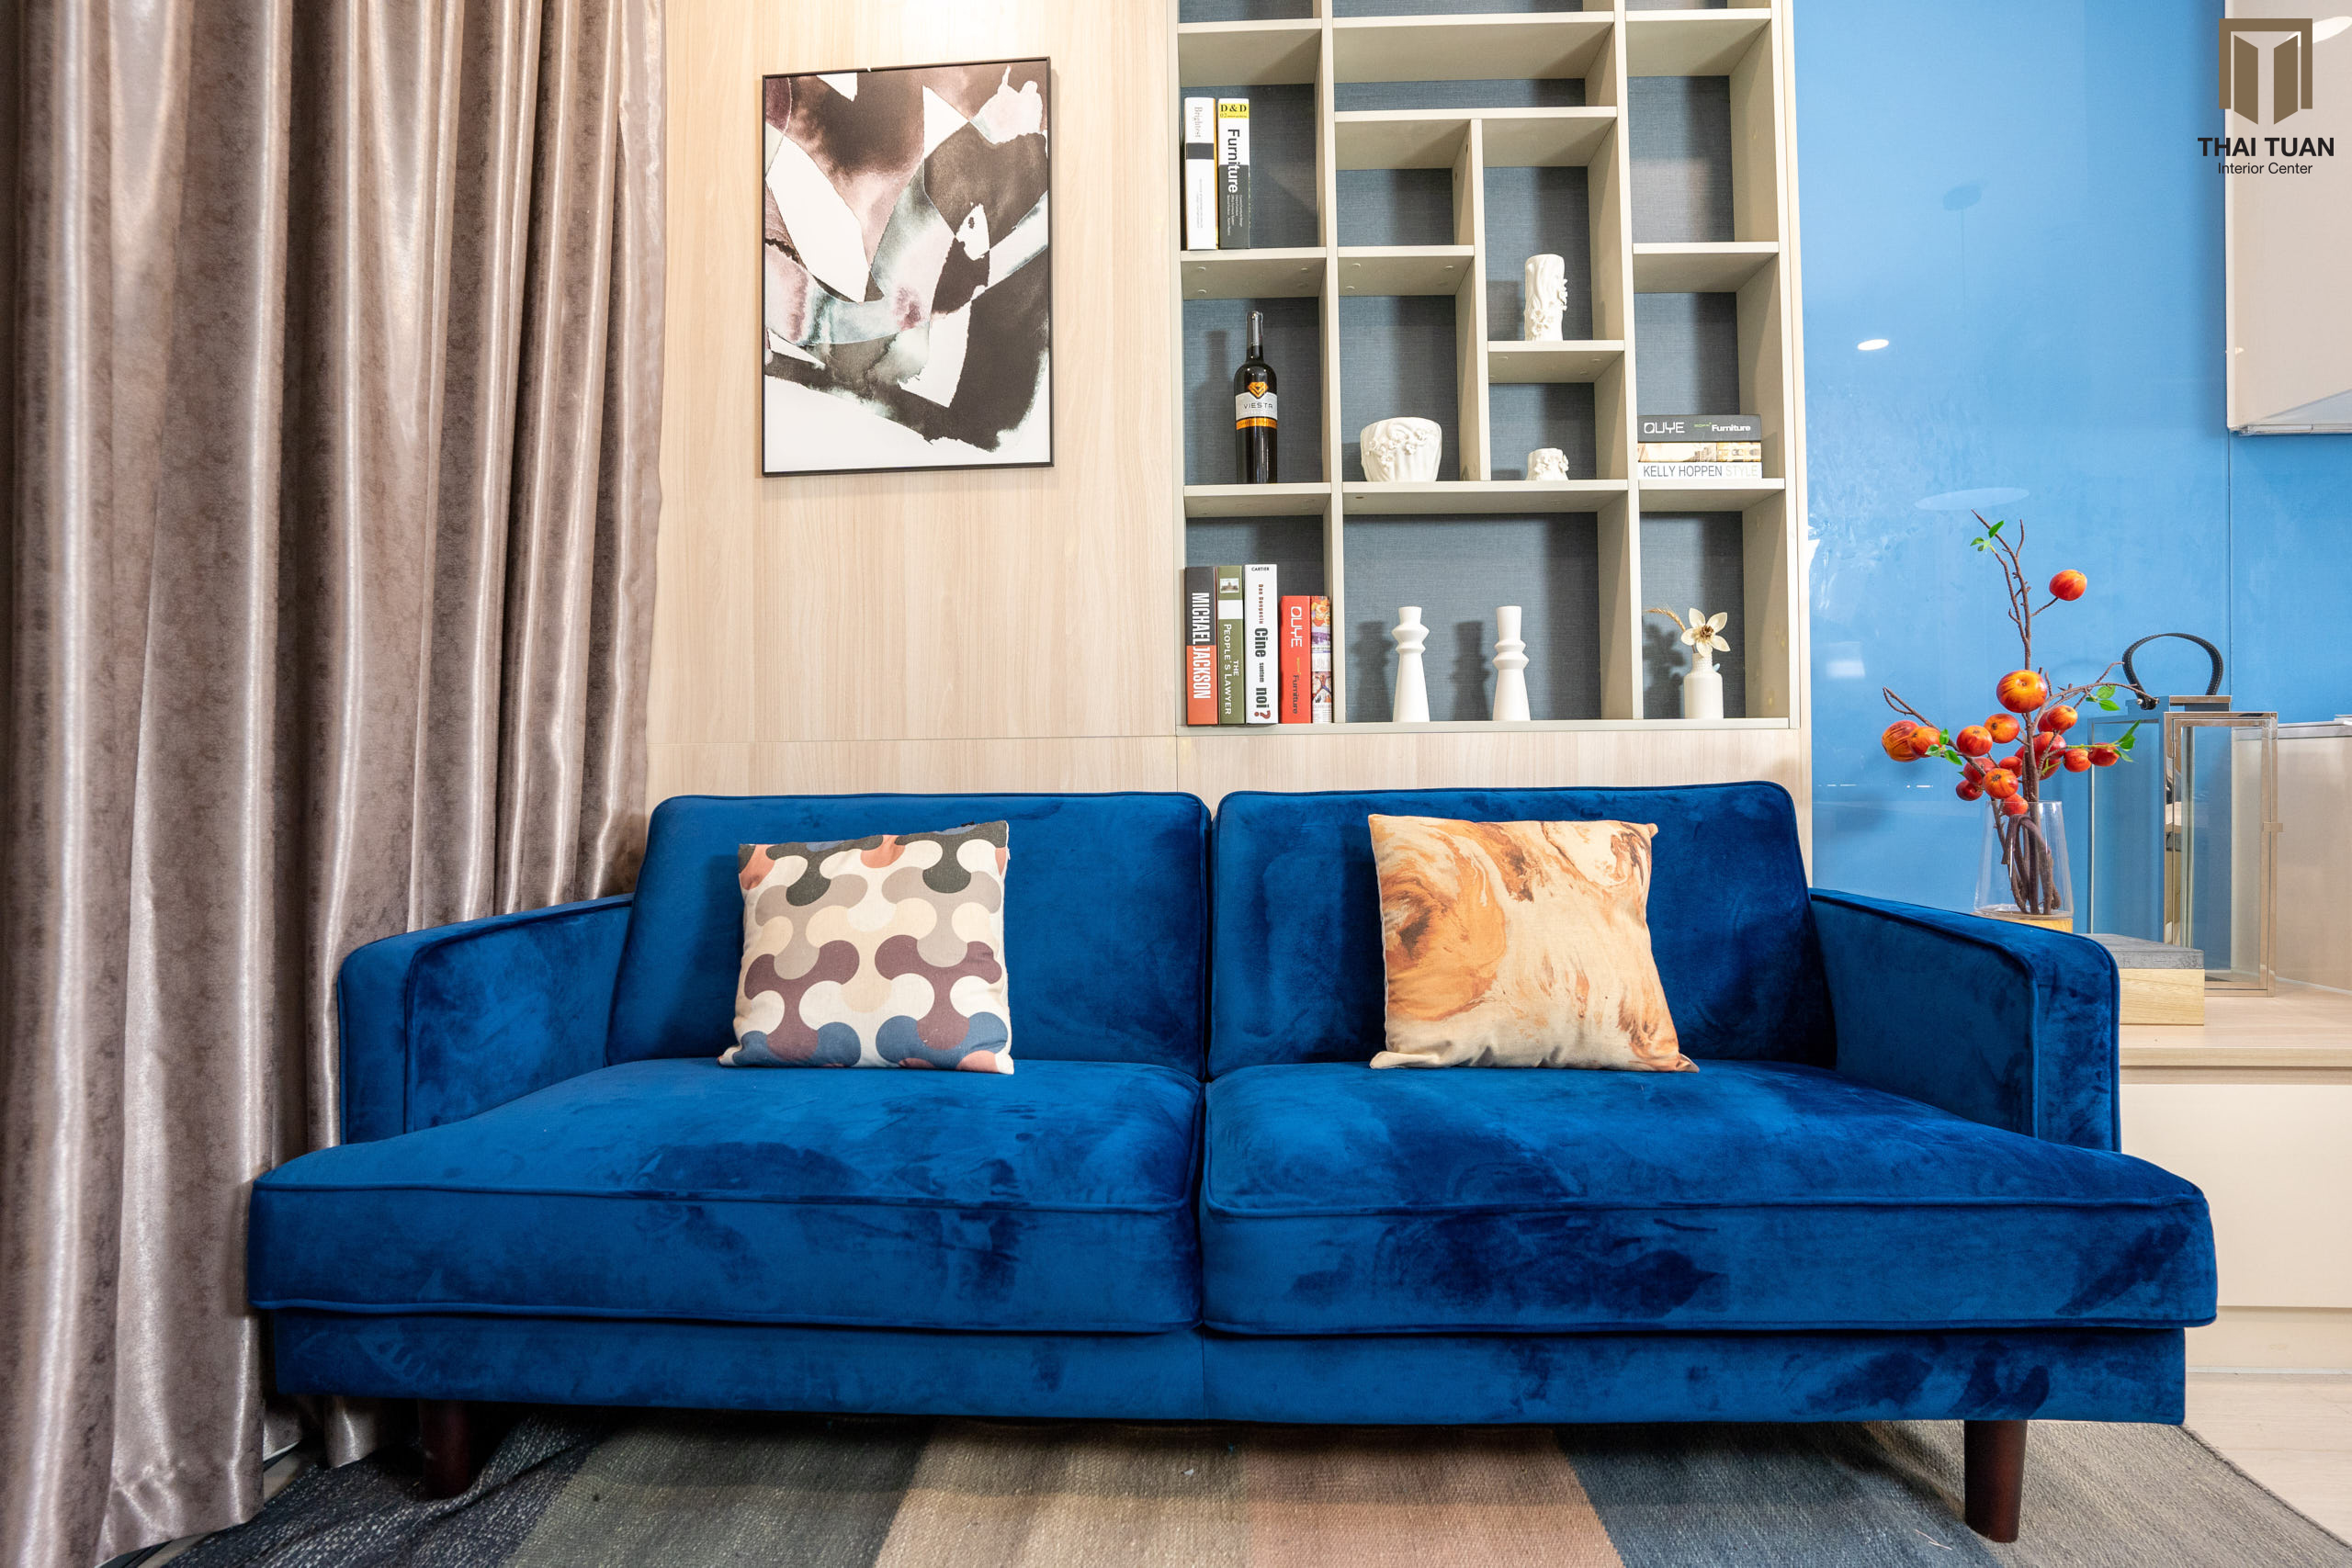 Phòng khách với chiếc sofa xanh dương làm điểm nhấn